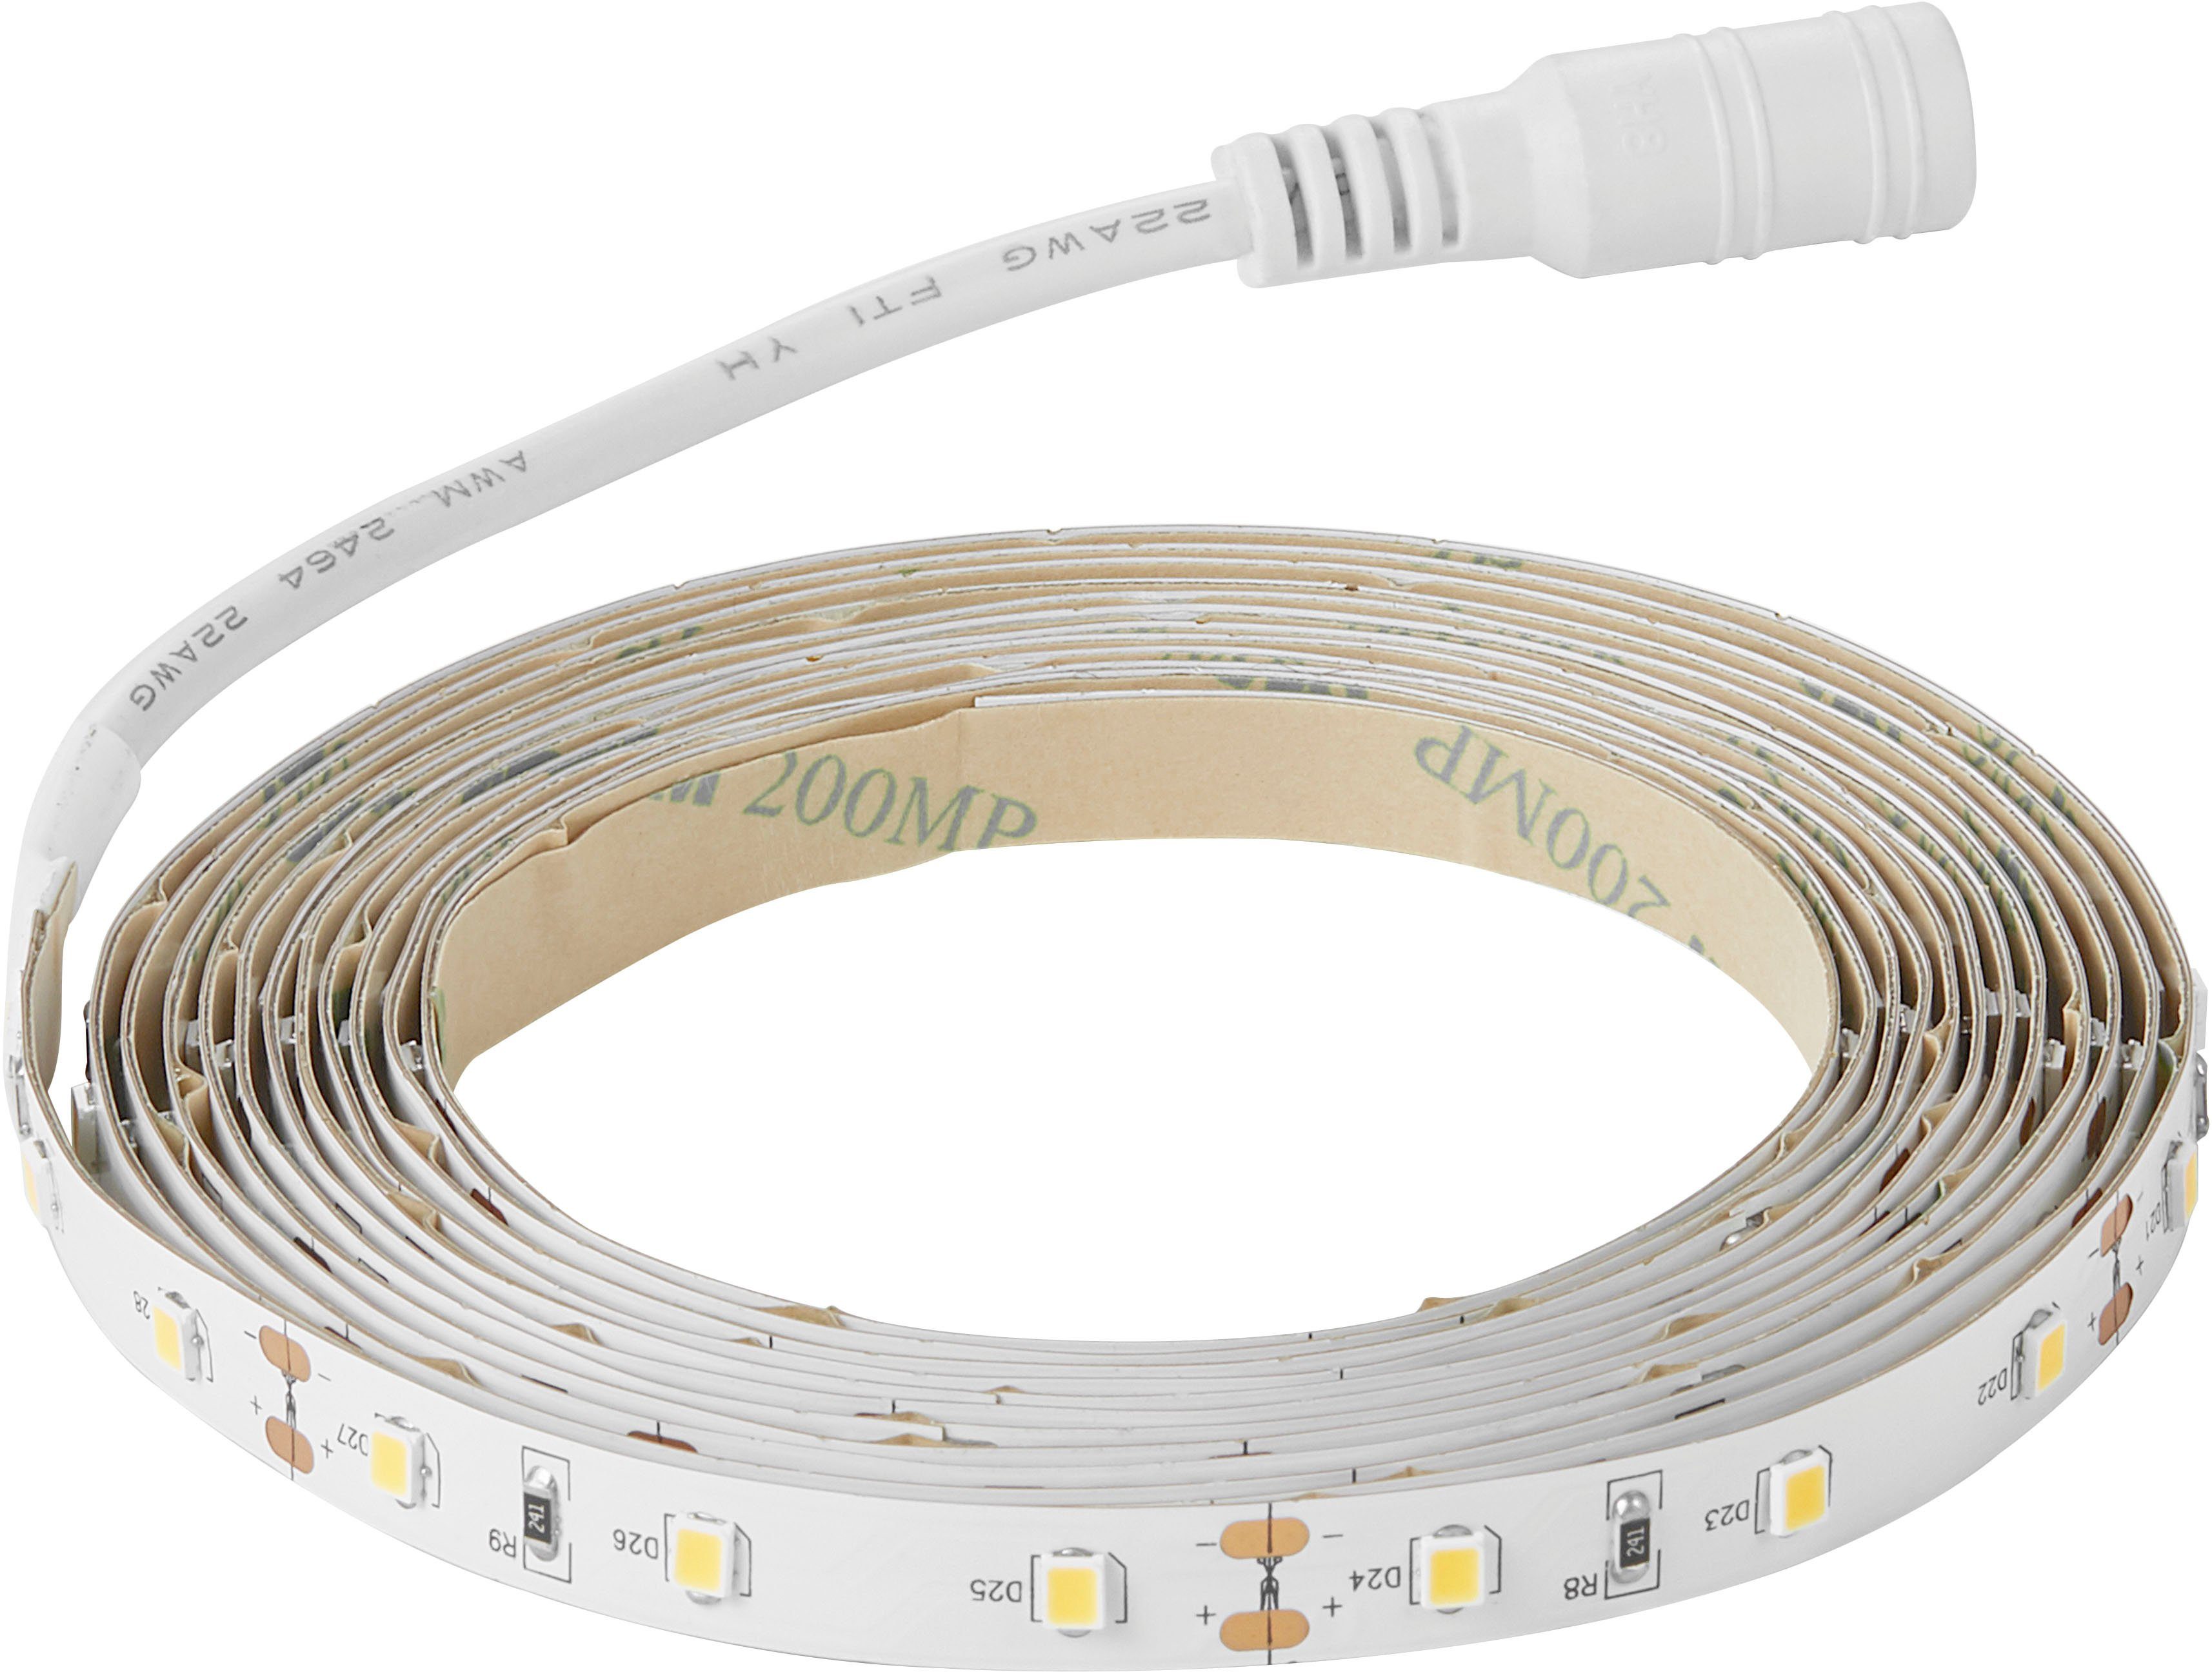 Stripe LED Nordlux anzubringen – Einfach Ledstrip, wiederverwendbar auf Streifen, Klebeband